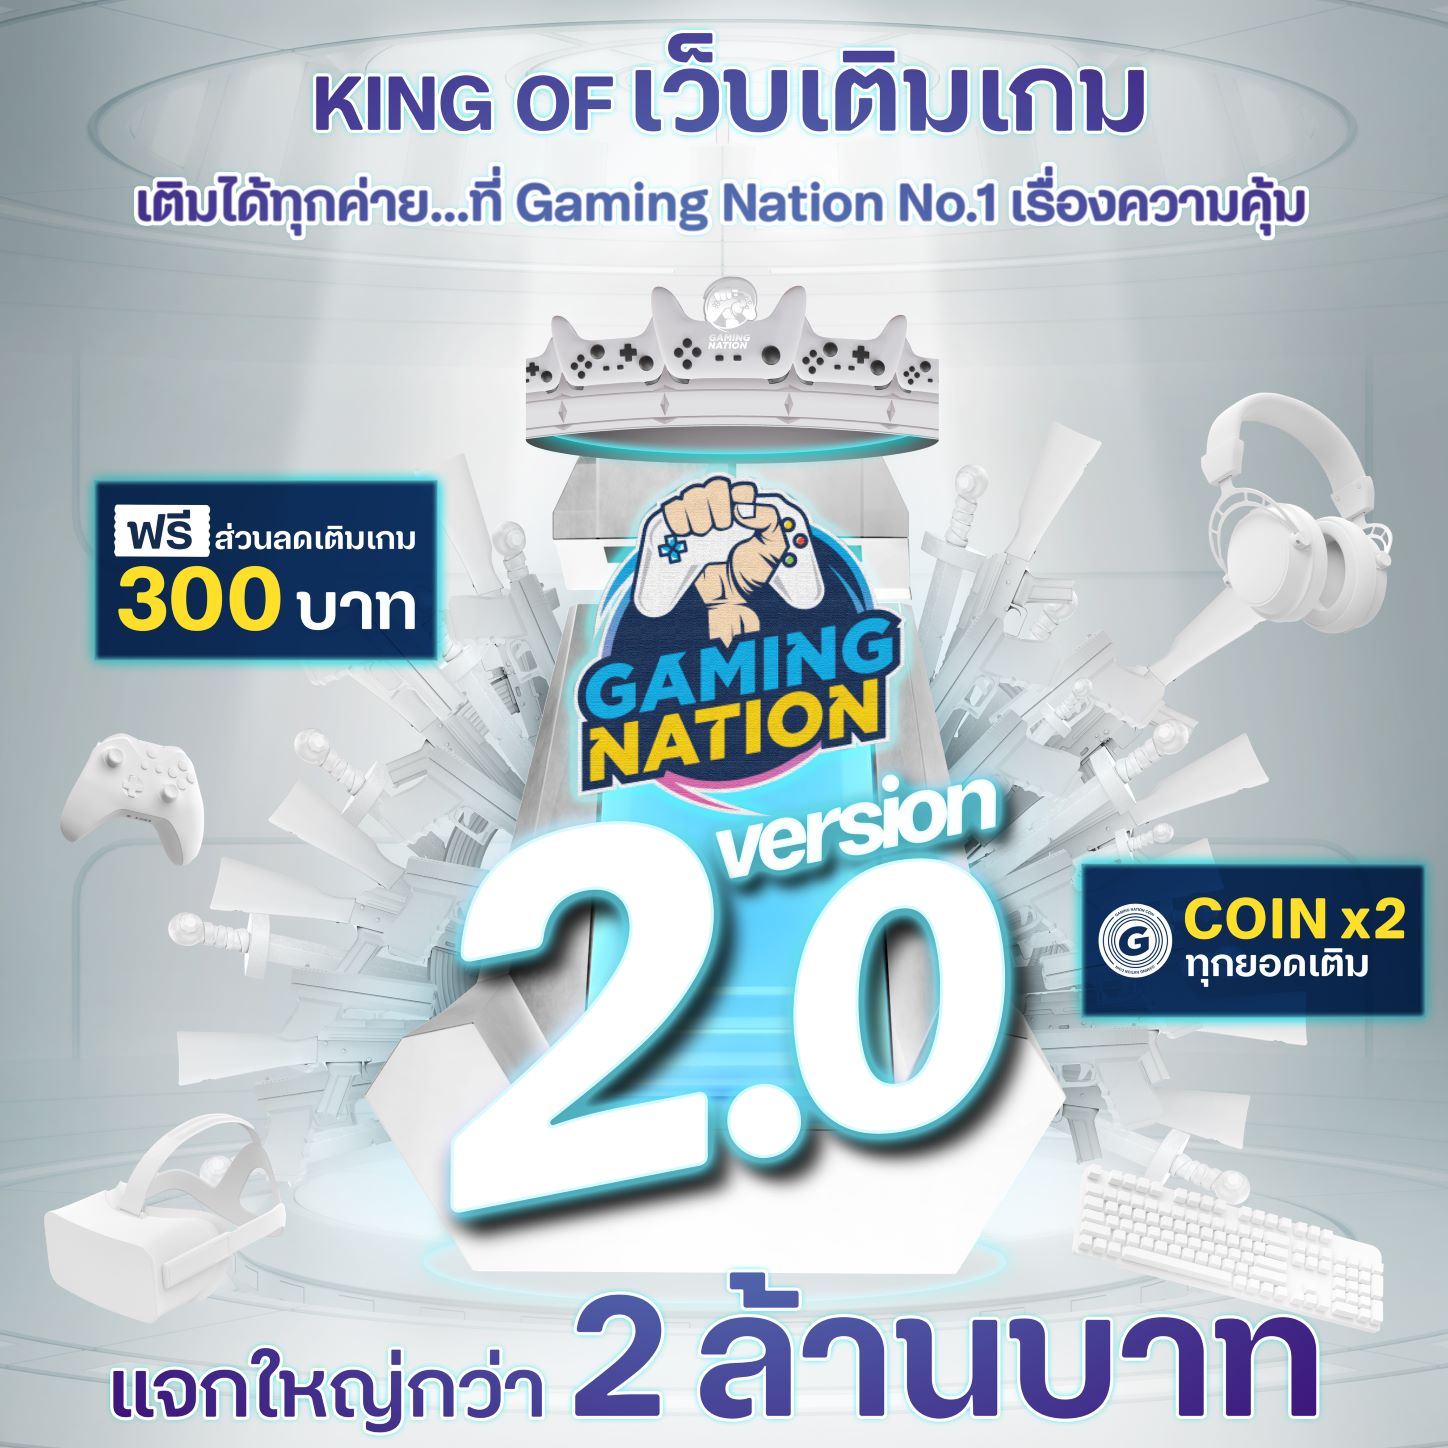 KV Gaming Nation 1 | Gaming Nation | Gaming Nation 2.0 เวอร์ชันใหม่ล่าสุดควงพันธมิตรใหม่ MAKE by KBank